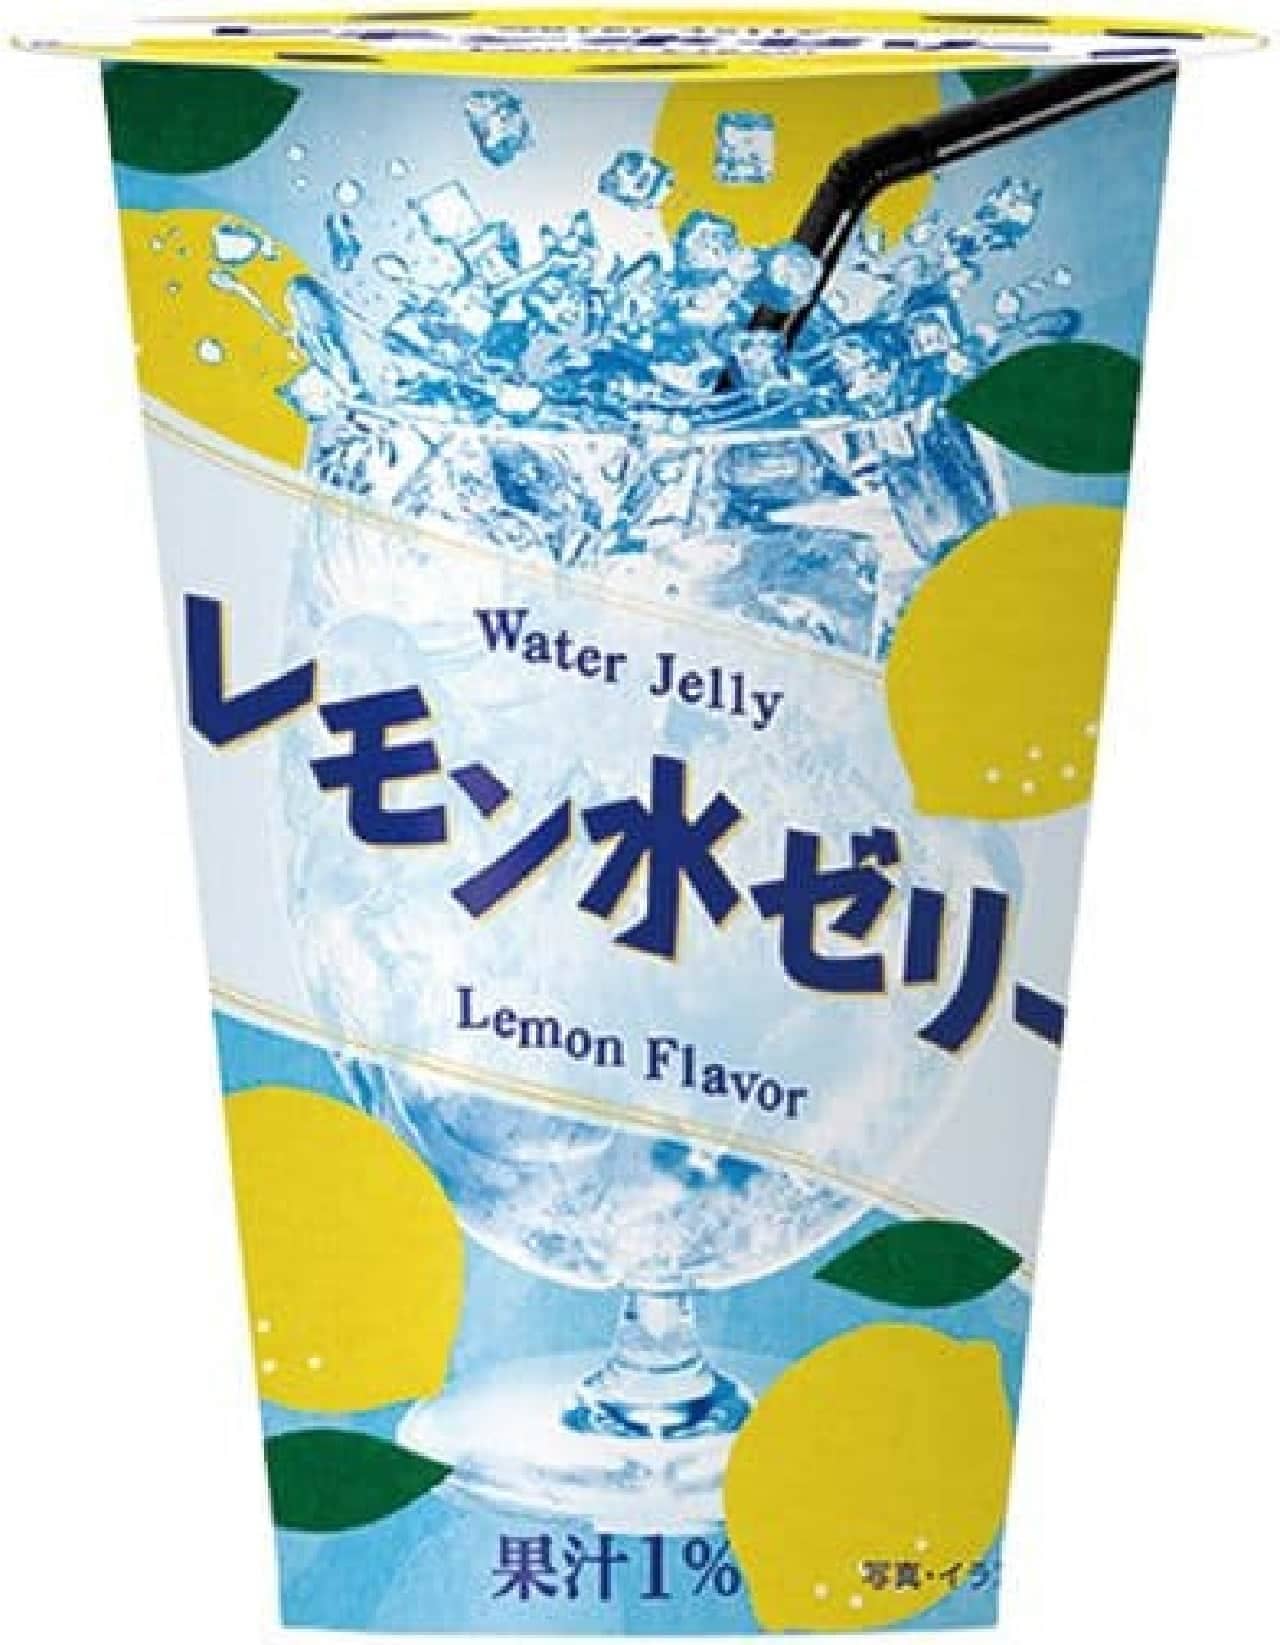 FamilyMart "Lemon Water Jelly